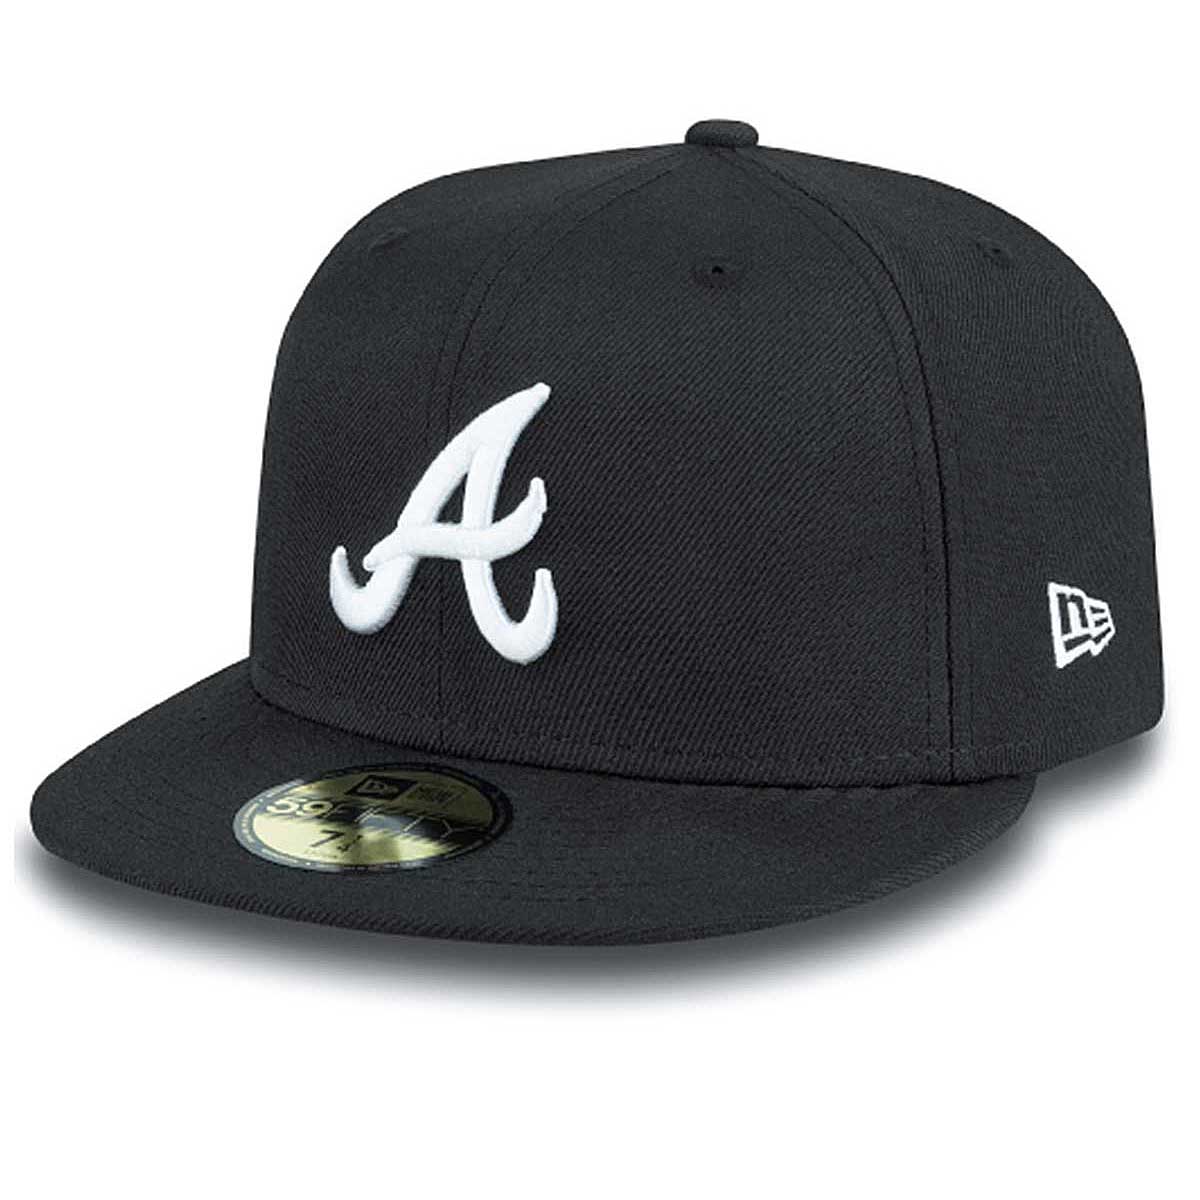 Buy MLB ATLANTA BRAVES BASIC 59FIFTY CAP for EUR 33.90 on !